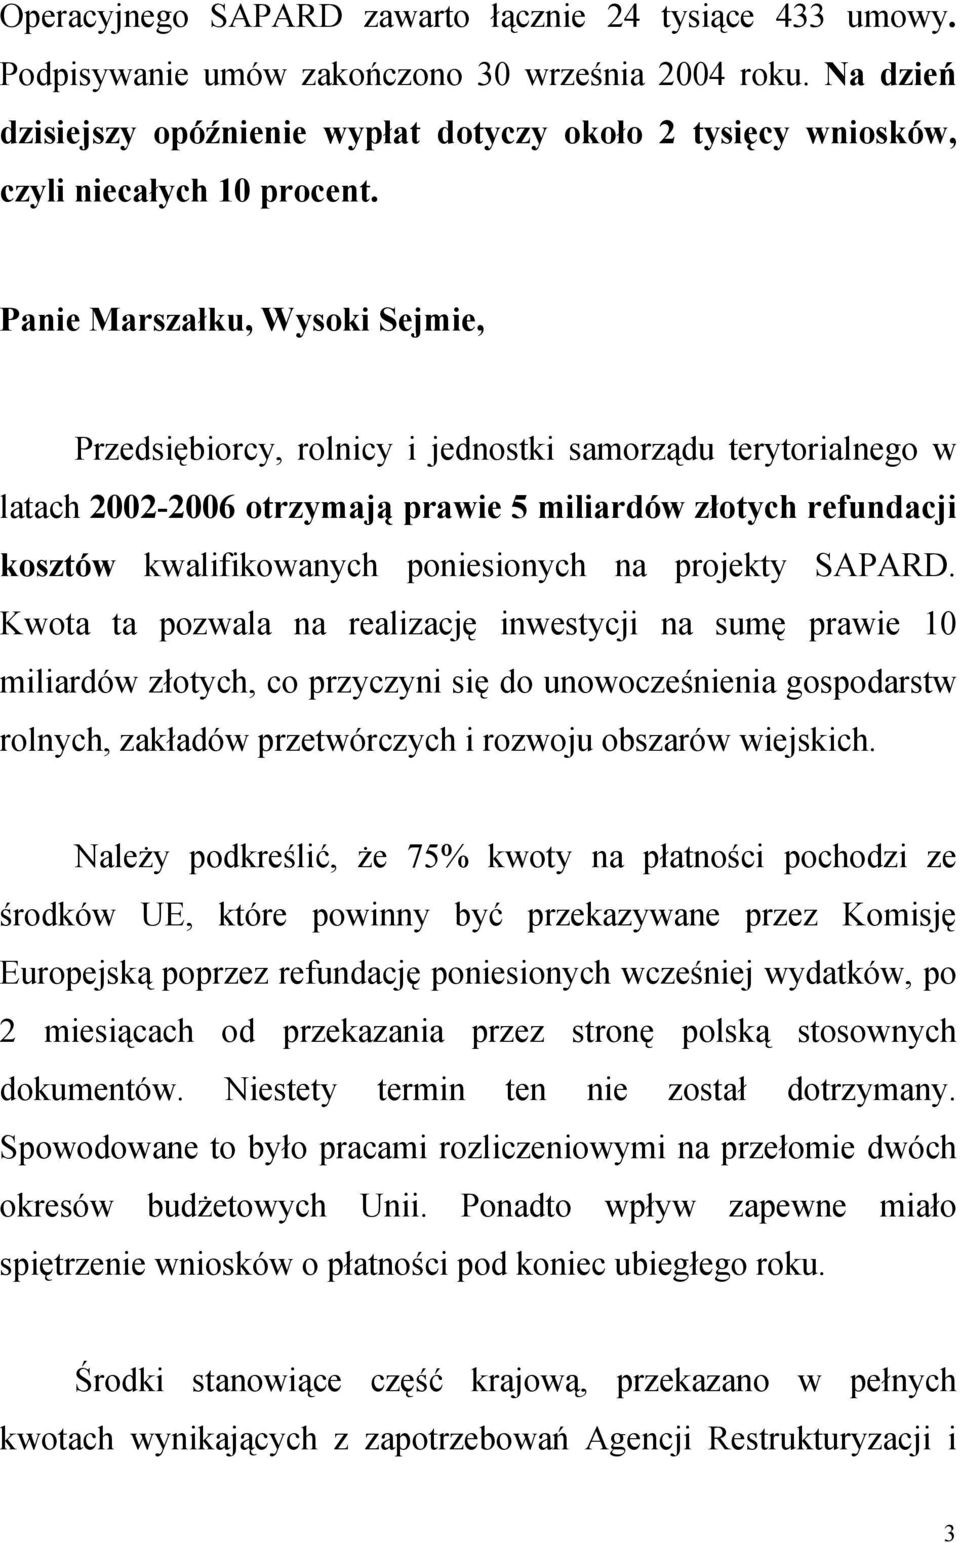 Panie Marszałku, Wysoki Sejmie, Przedsiębiorcy, rolnicy i jednostki samorządu terytorialnego w latach 2002-2006 otrzymają prawie 5 miliardów złotych refundacji kosztów kwalifikowanych poniesionych na